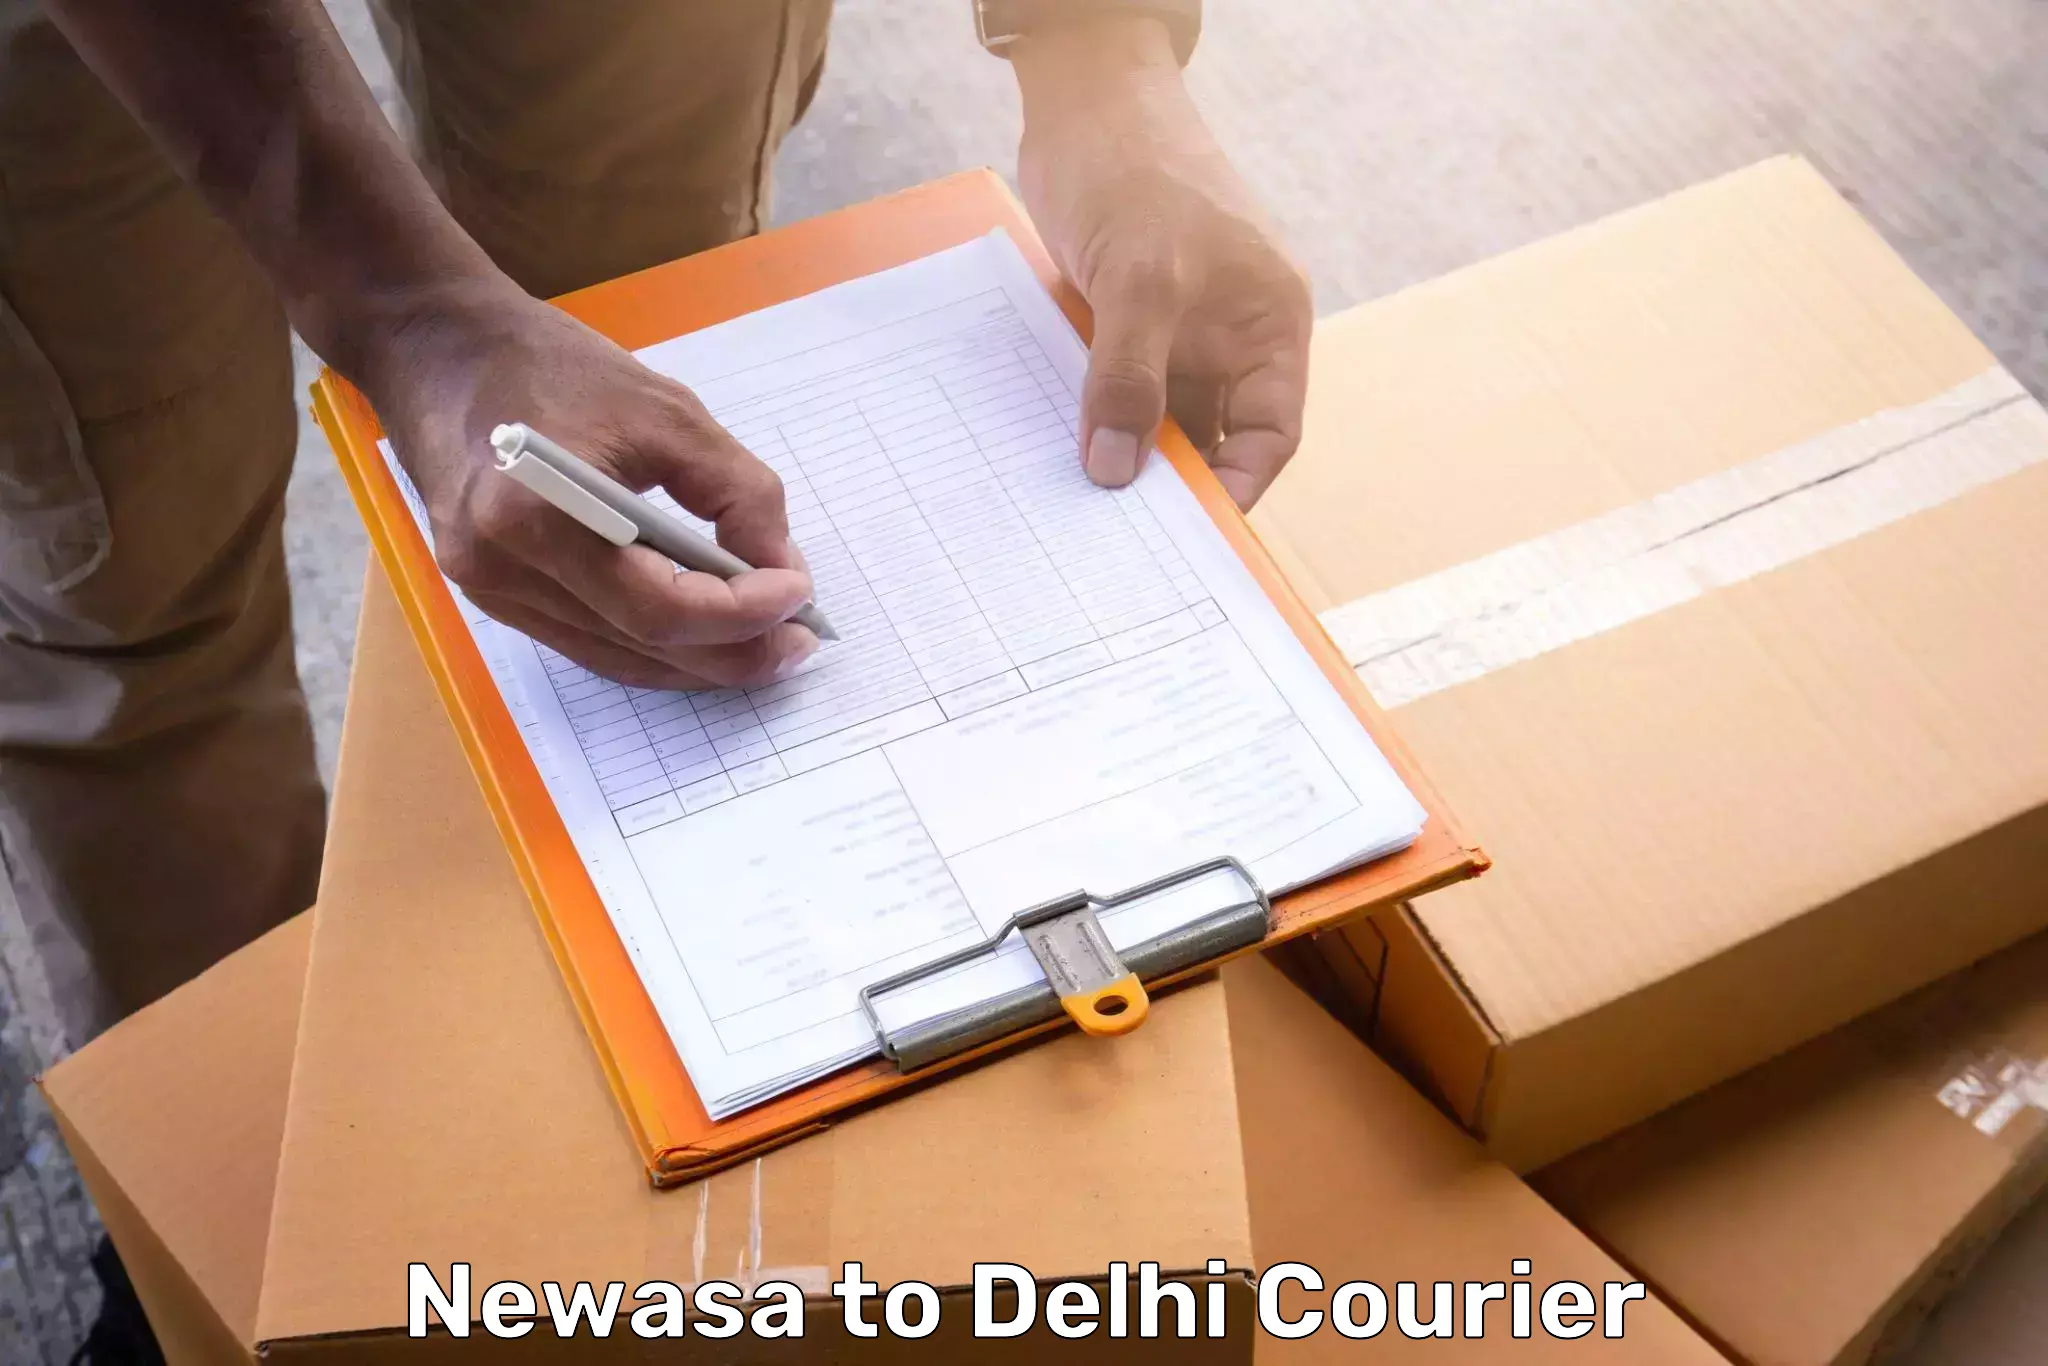 Luggage delivery app Newasa to Delhi